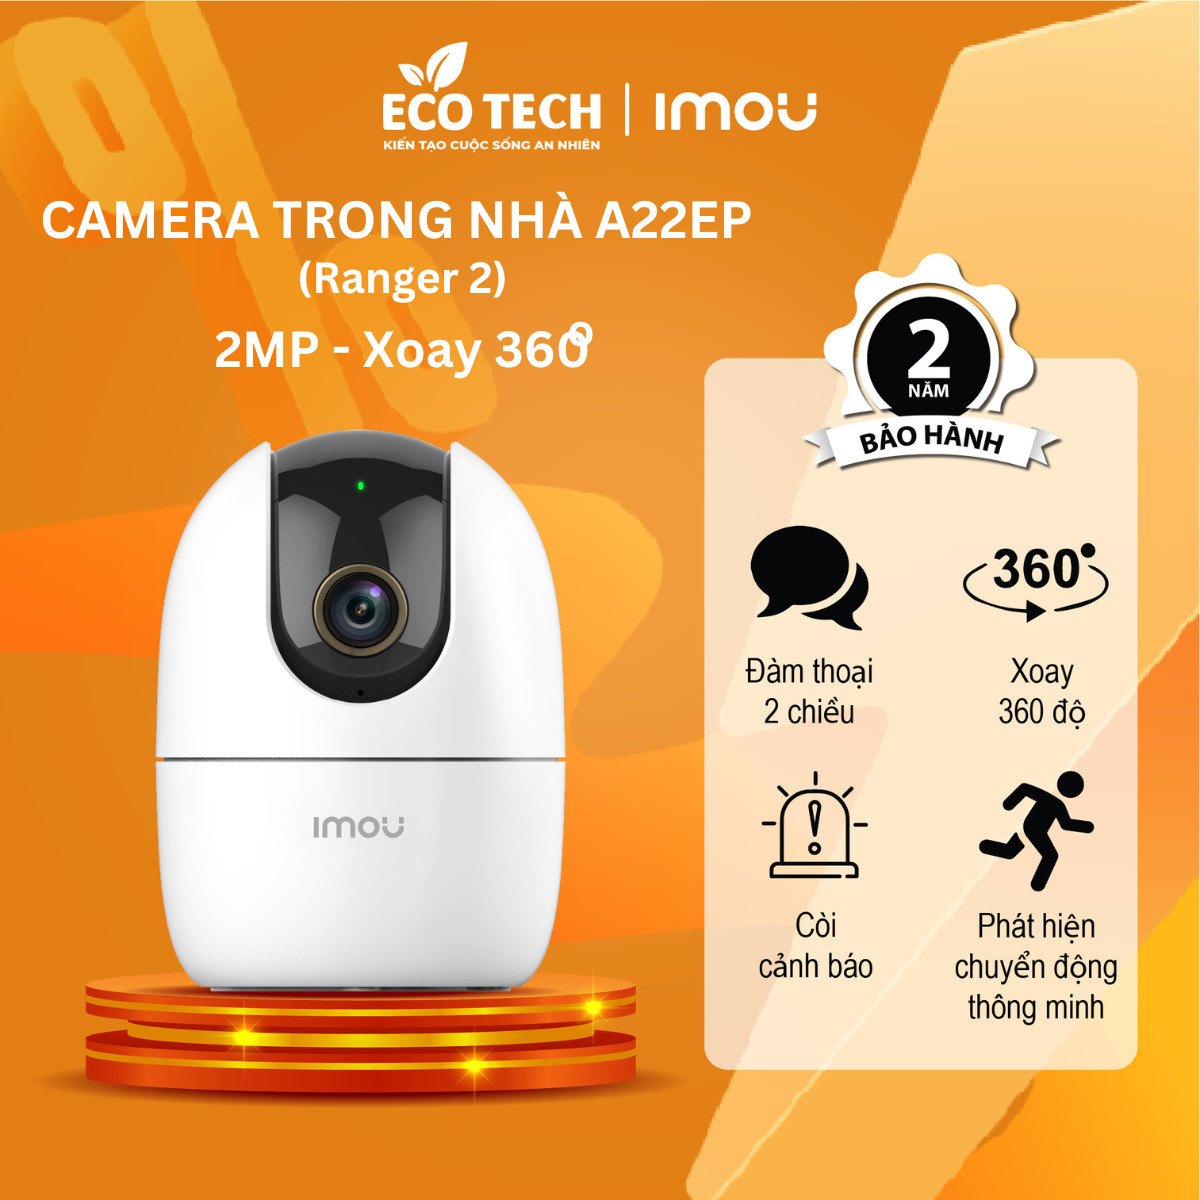 Camera Imou trong nhà A22EP IP Wifi Độ phân giải 2M, Phát hiện và Cảnh báo chuyển động, Đàm thoại, Quay 360 độ - Eco Tech Store